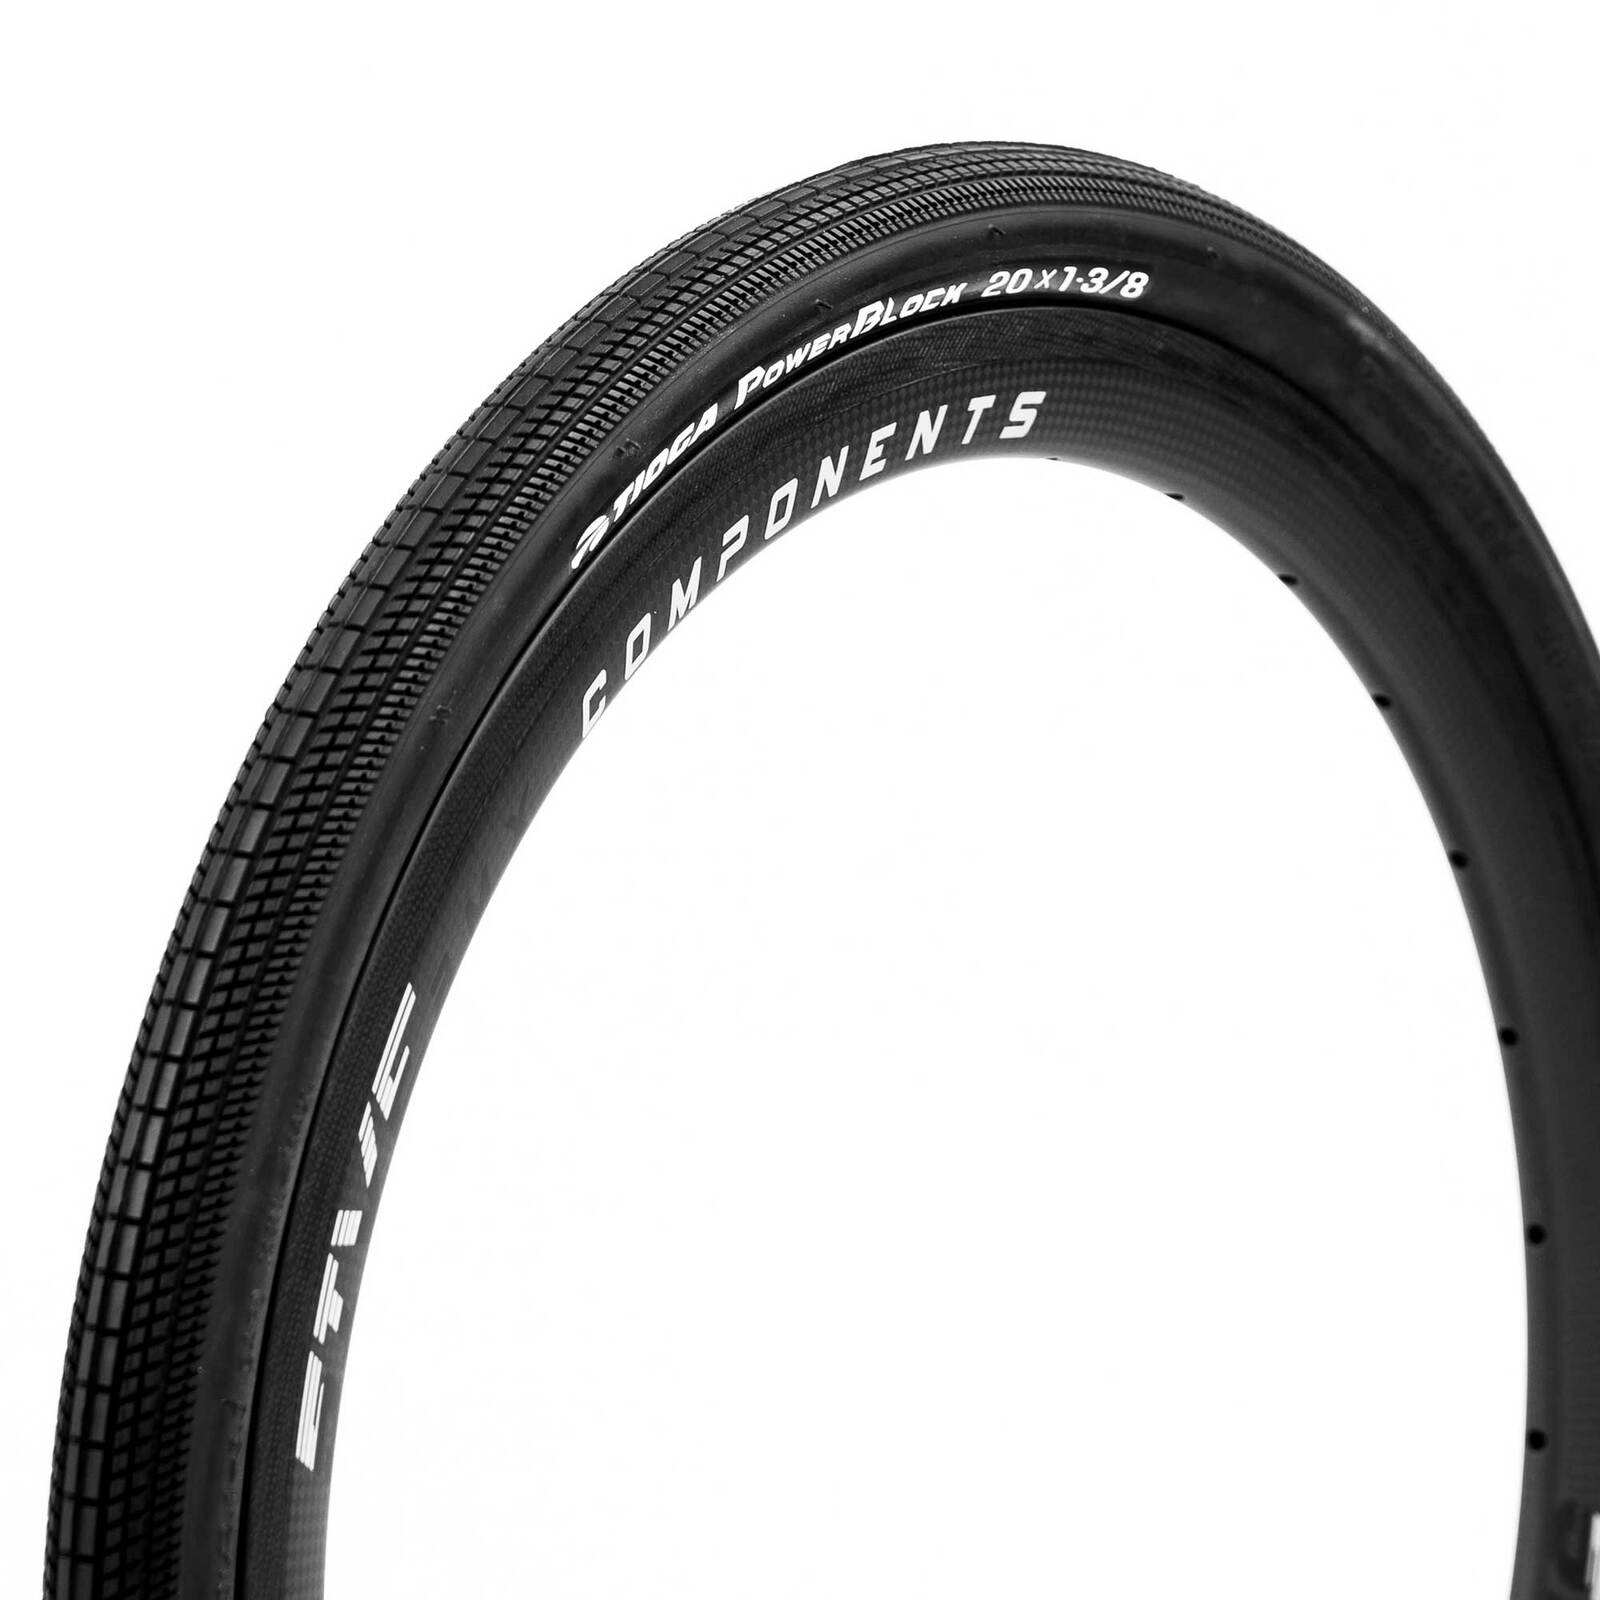 BMX Race Racing tioga Powerblock pneus tyre 20 x 1 3/8" 65psi